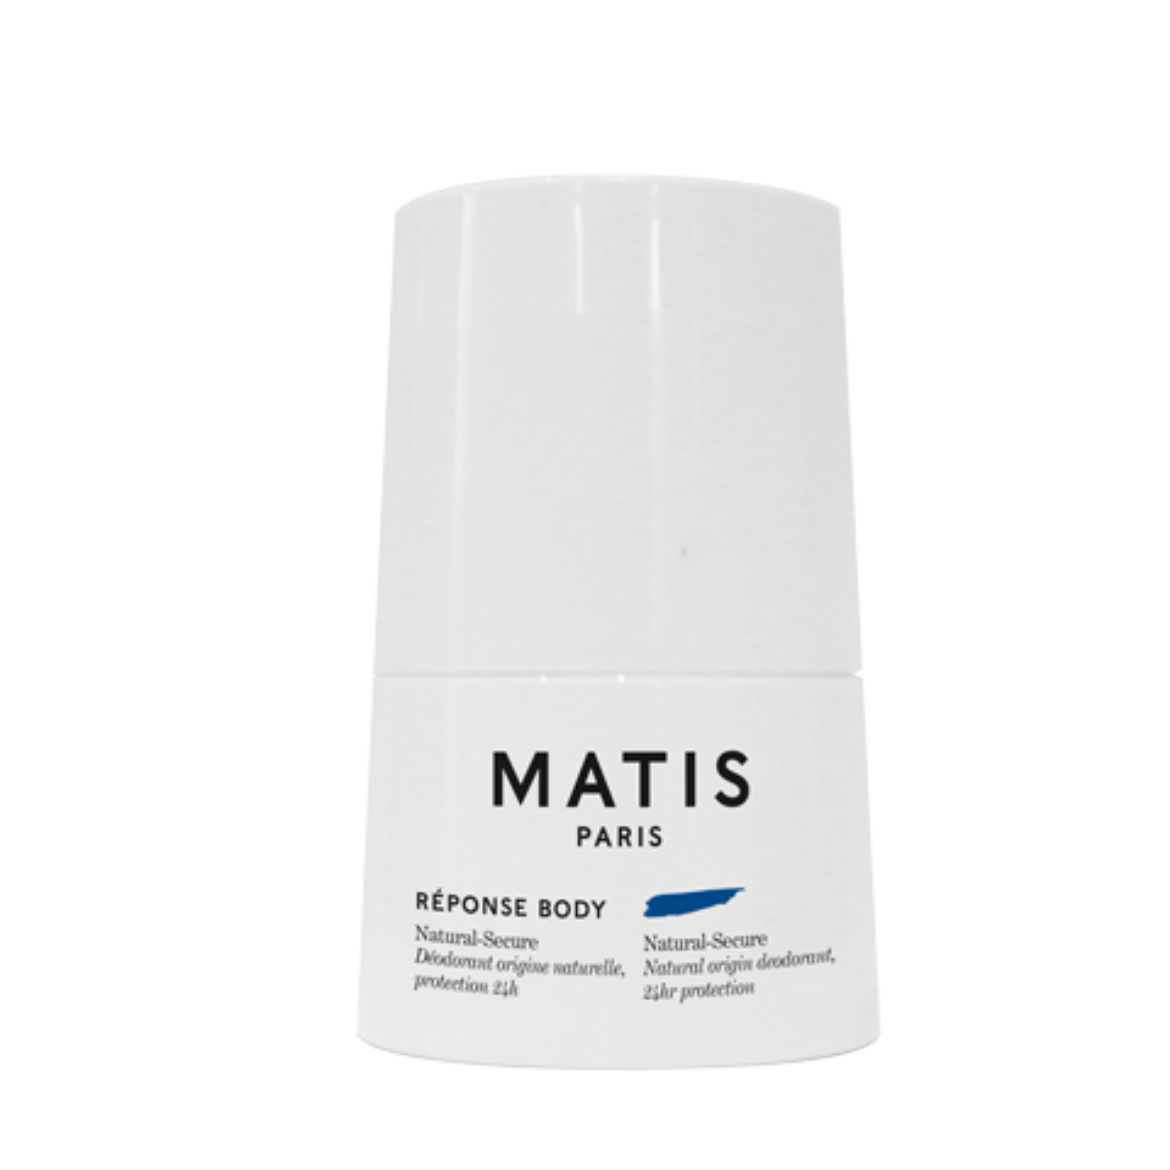 Image of Matis Natural-Secure 24hr Deodorant (50ml)